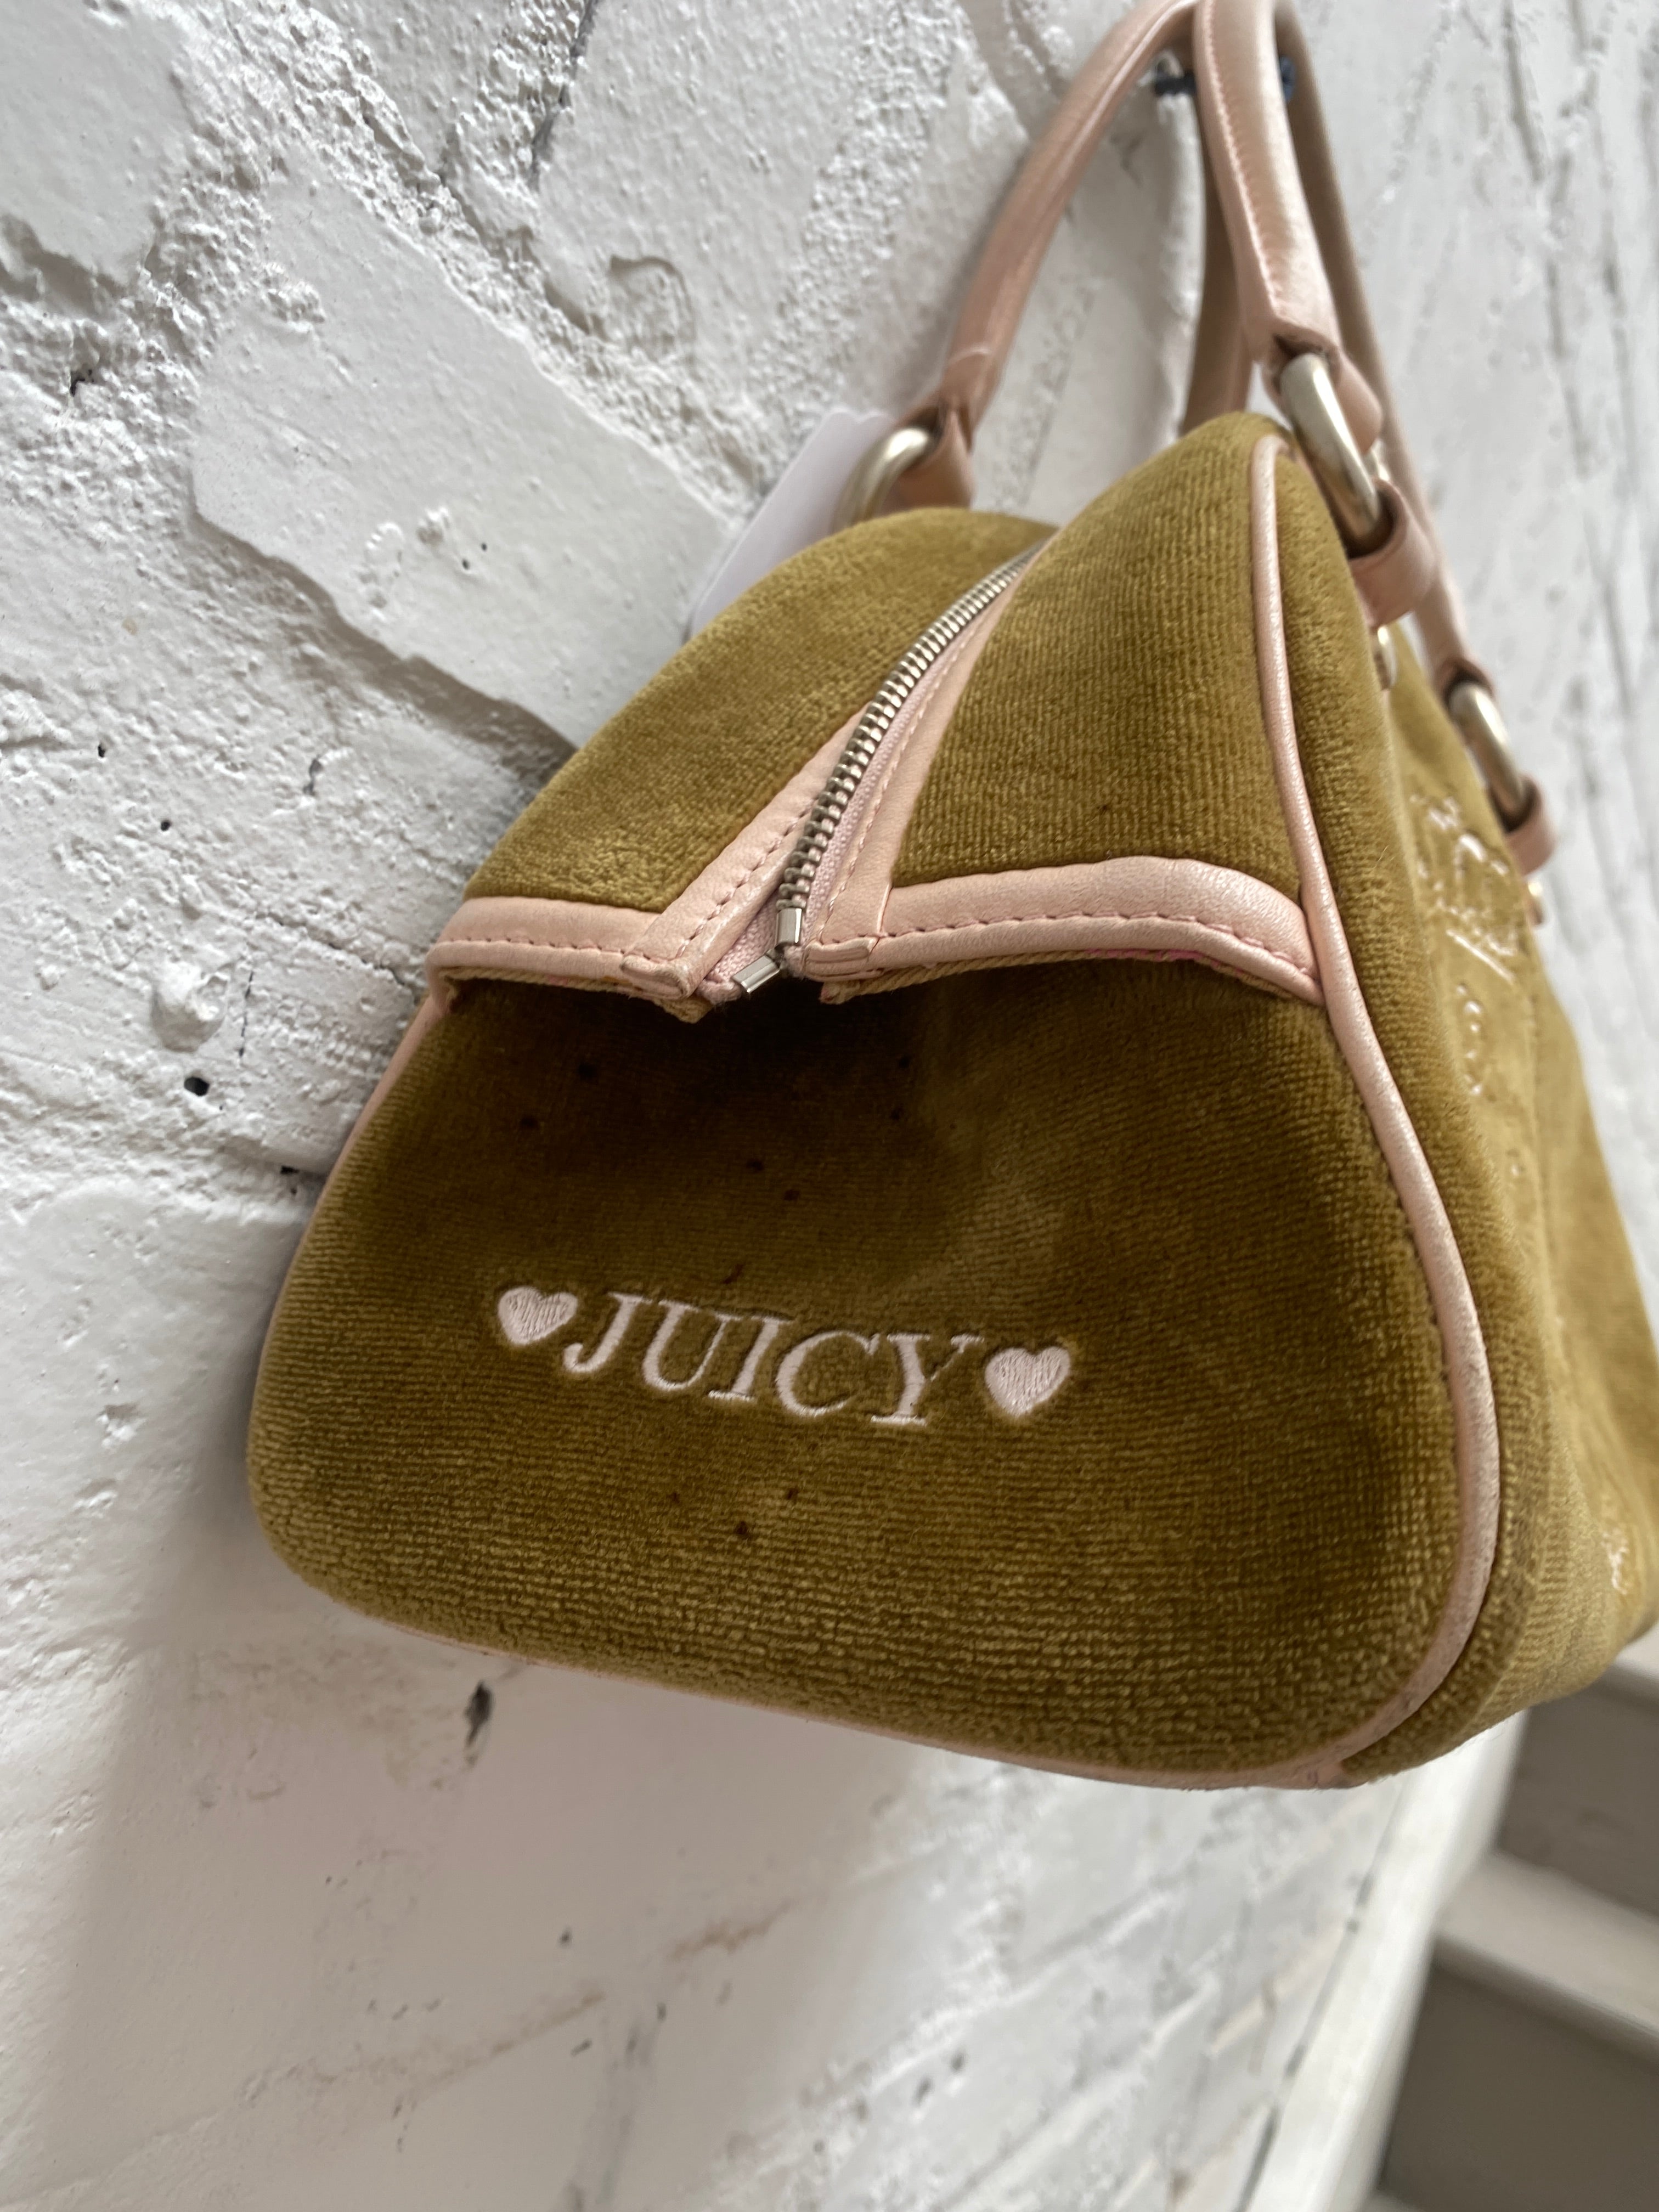 Help with Juicy Couture bag / vintage? : r/Depop